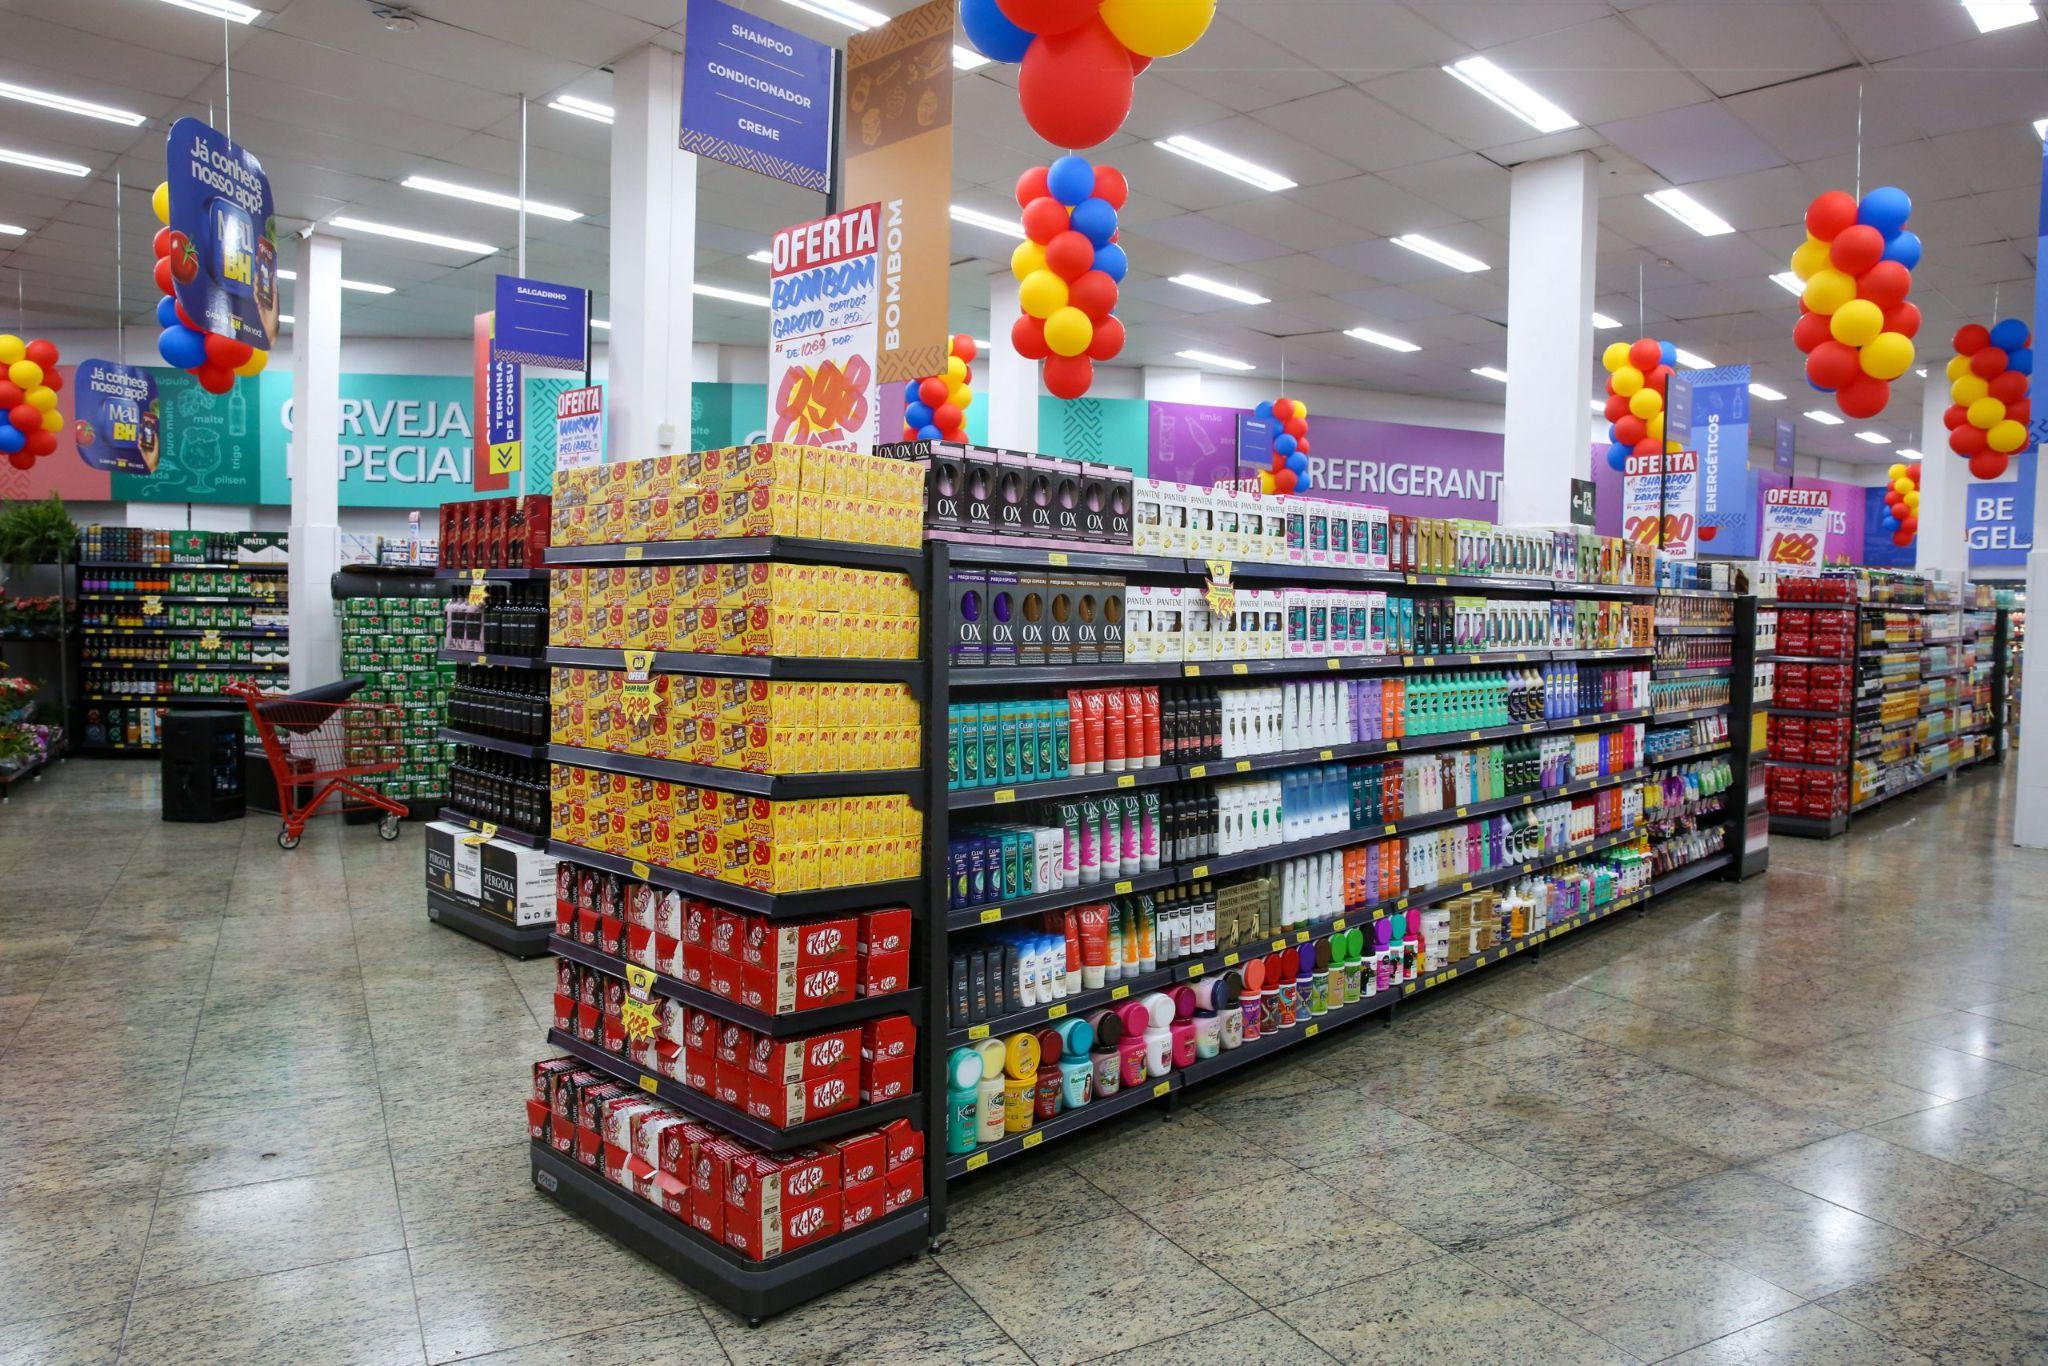 Ideias para decorar supermercados em datas comemorativas